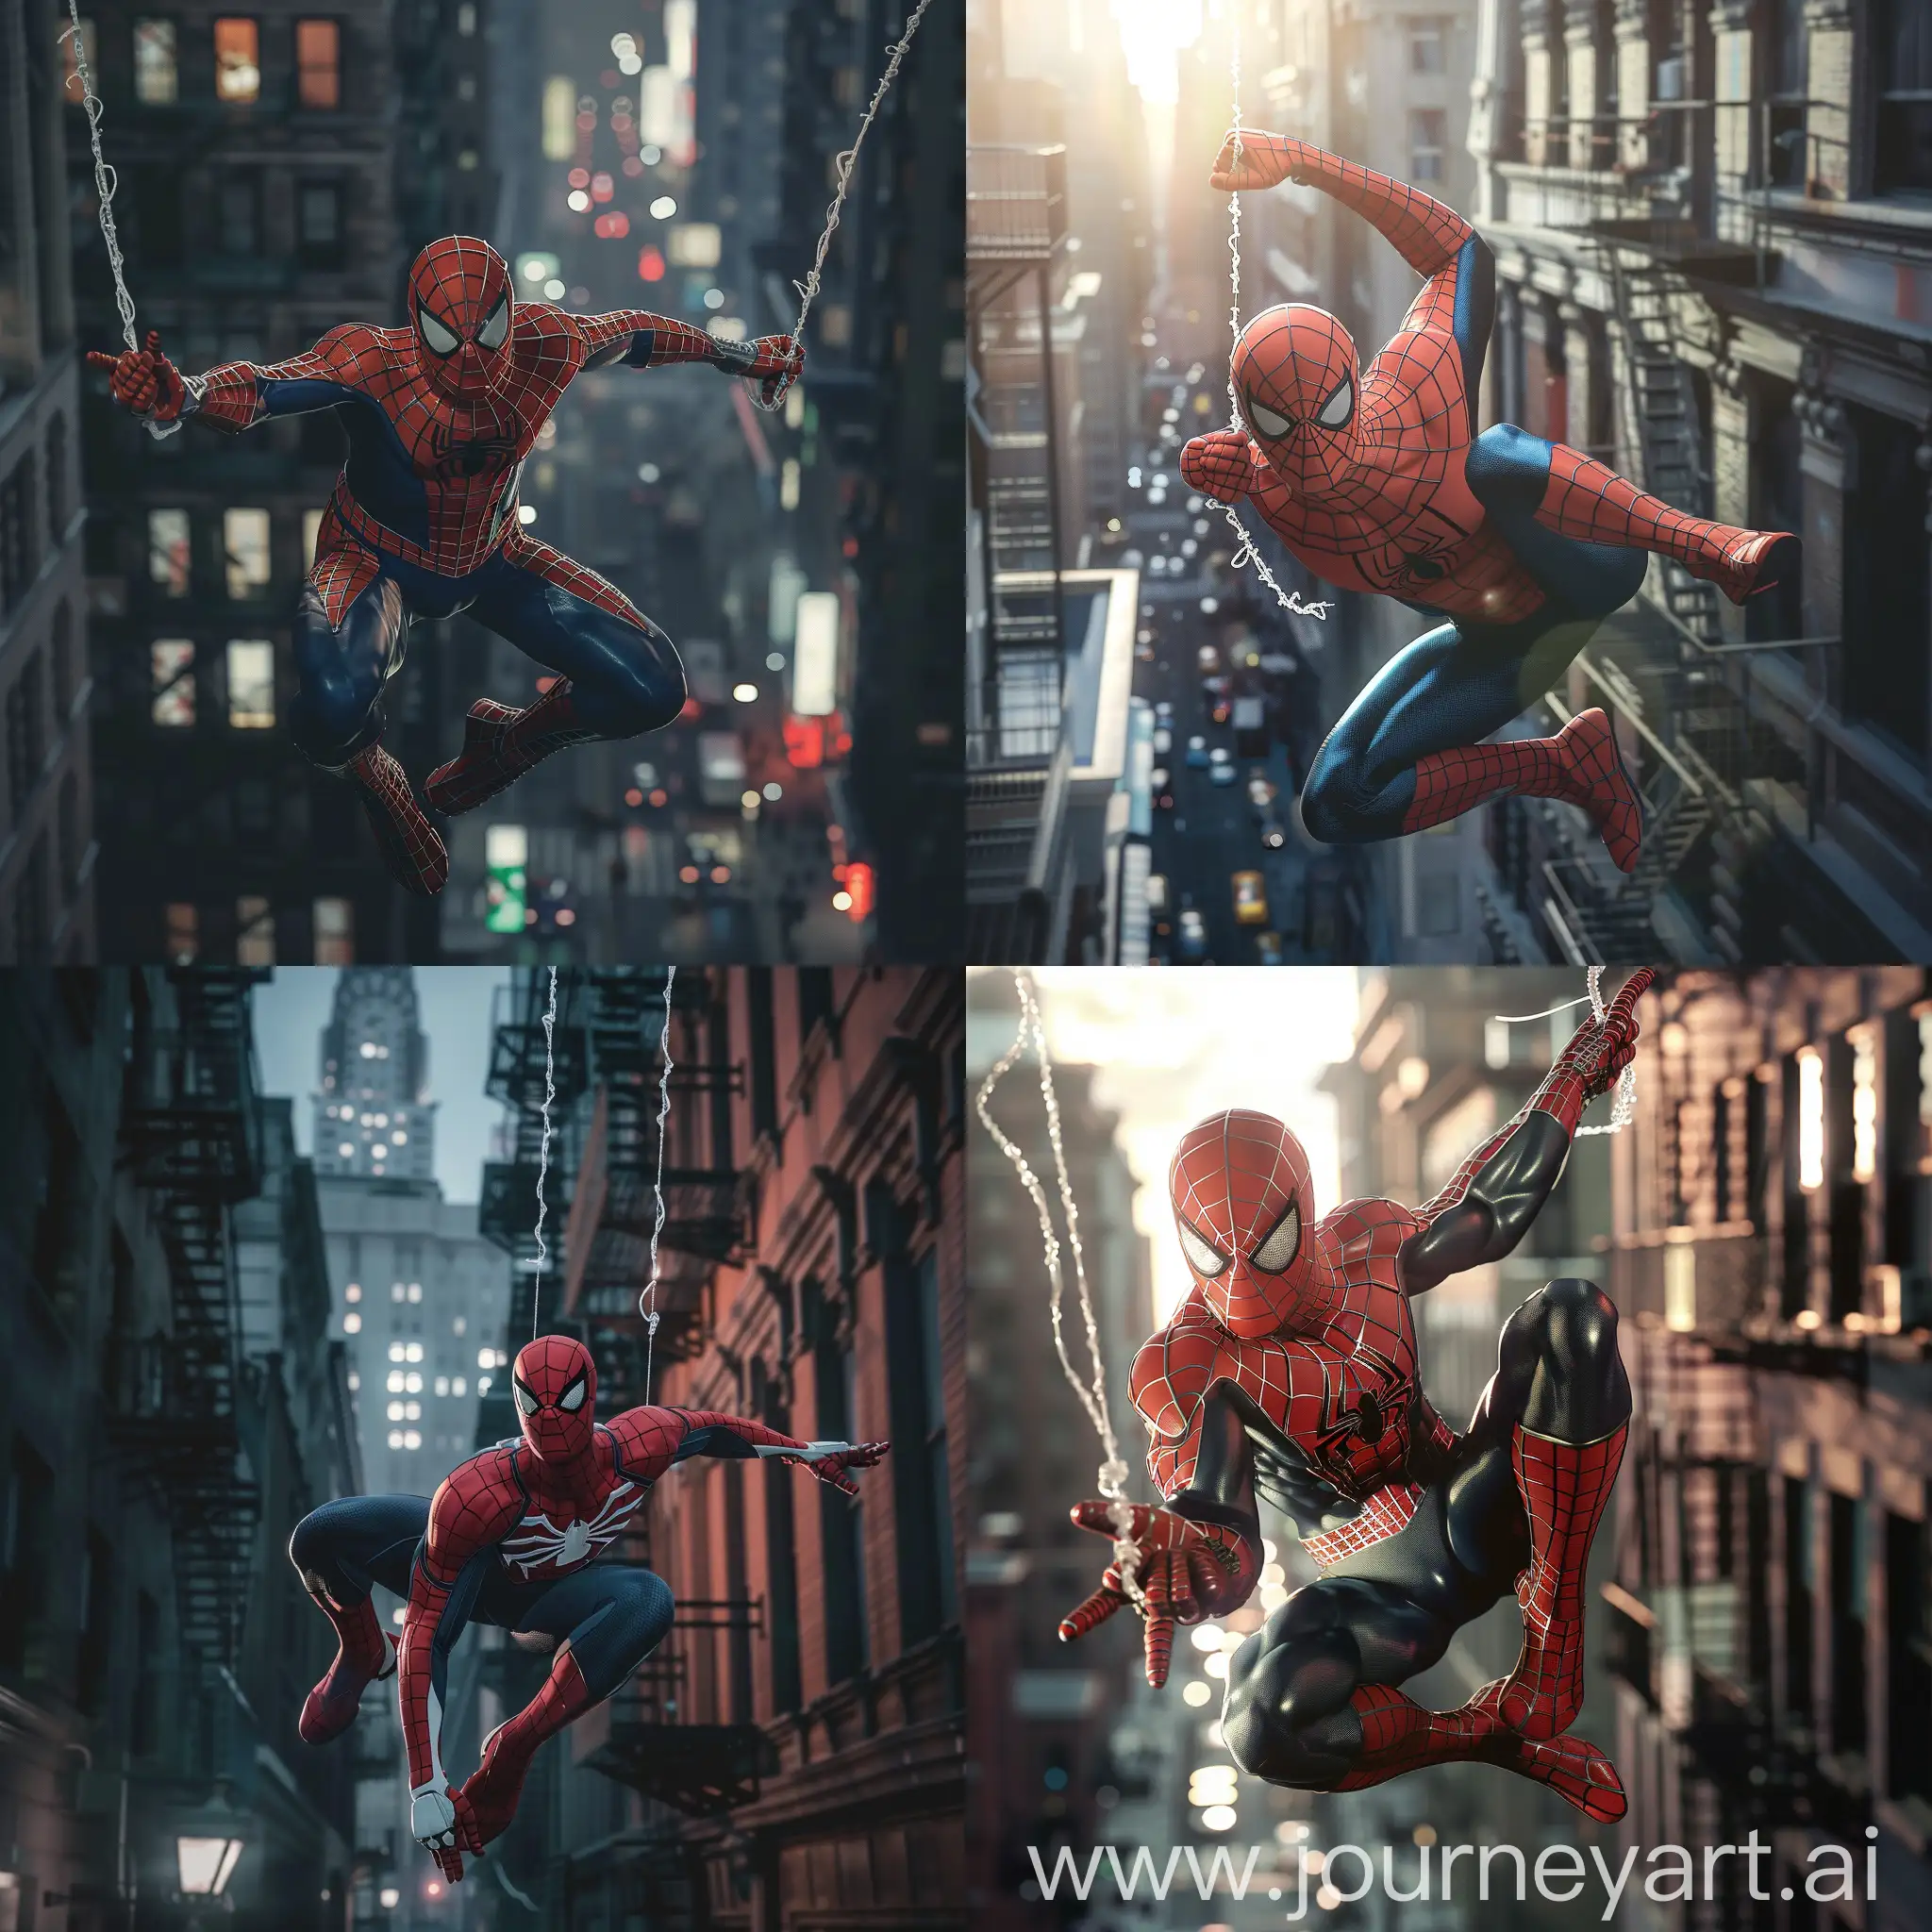 SpiderMan-Swinging-Between-City-Skyscrapers-in-HD-Detail-with-Striking-Lighting